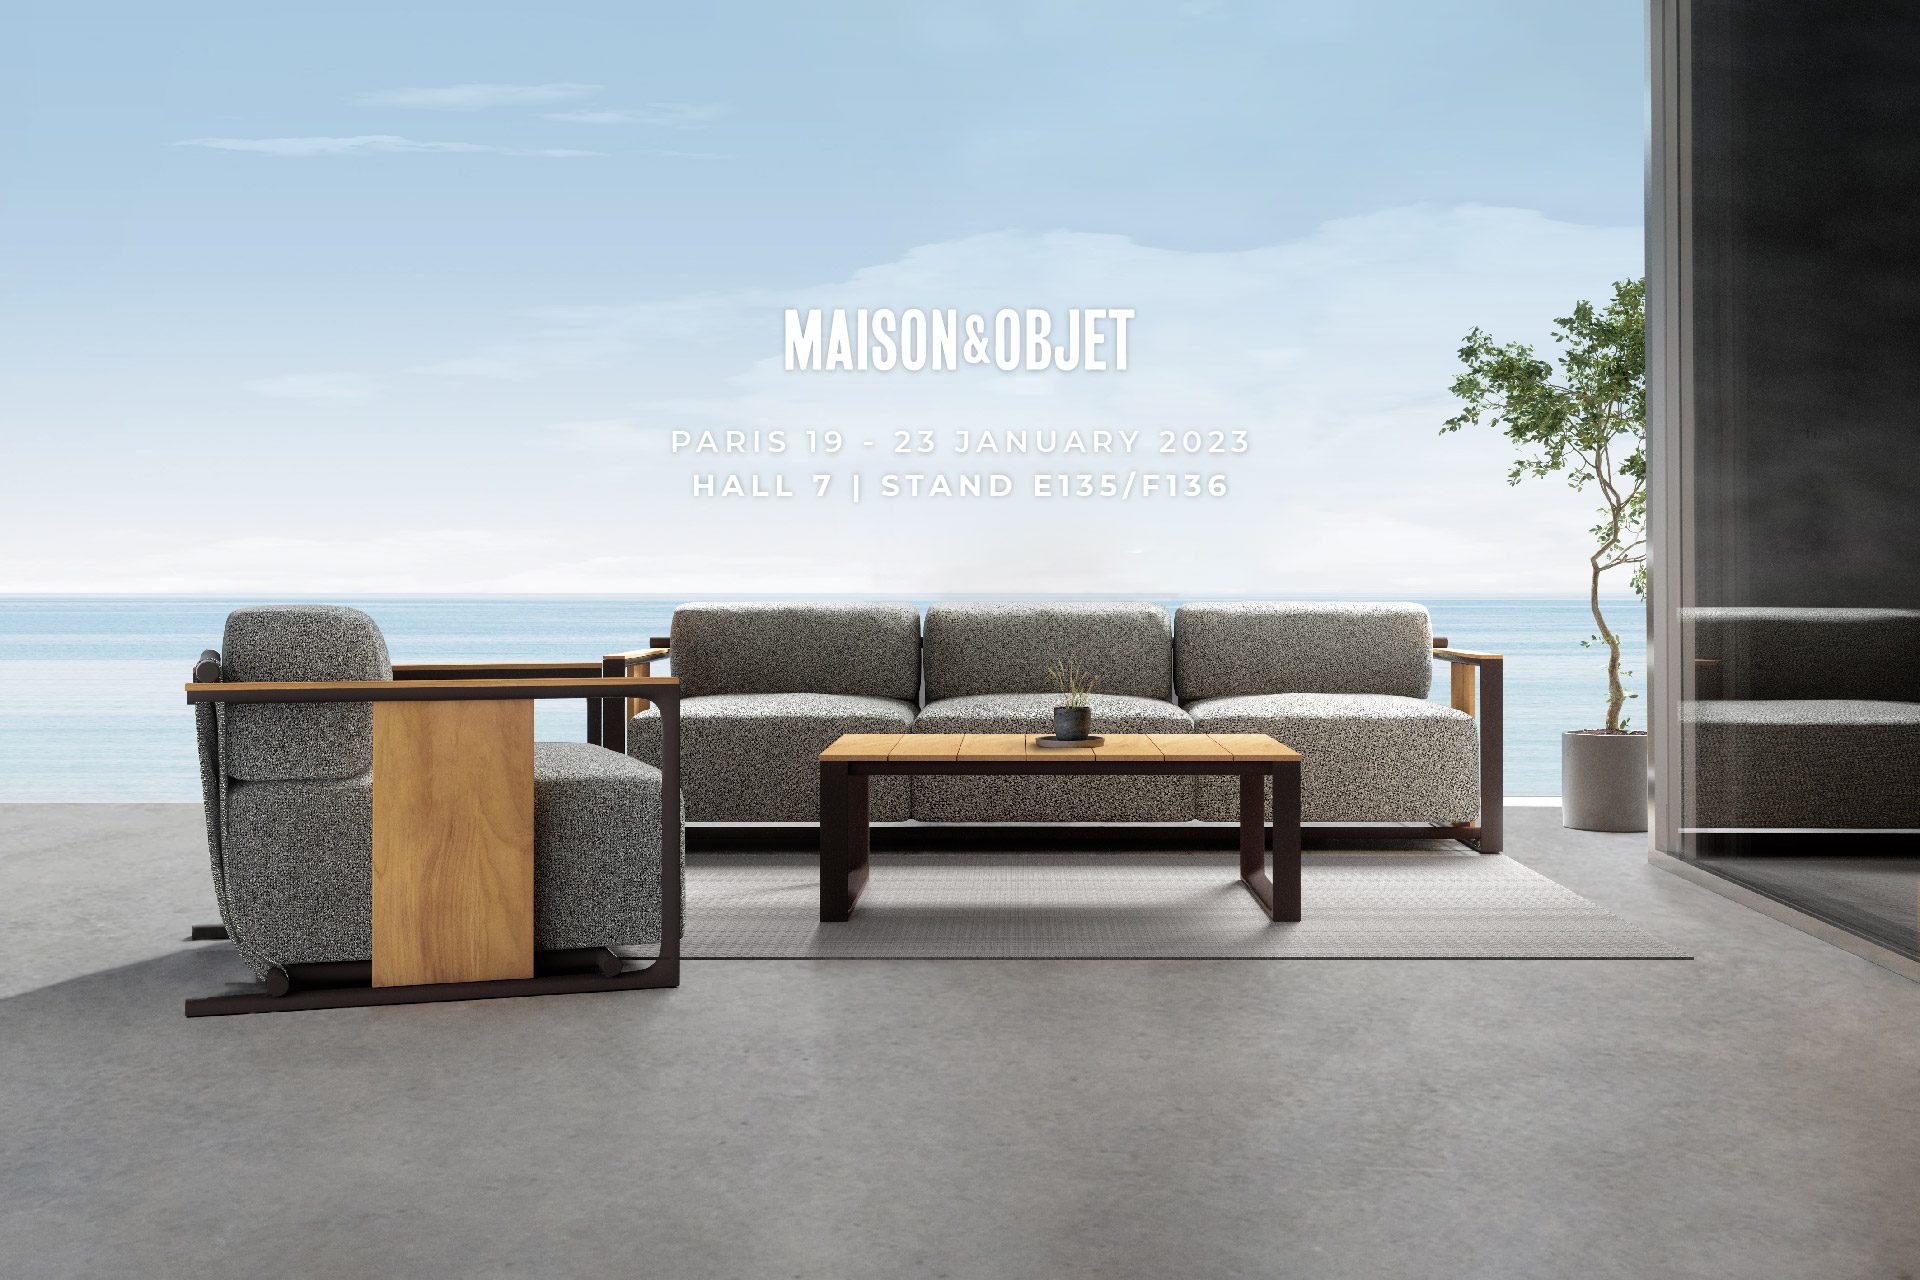 Vondom will be at Maison&Objet 2023 design fair